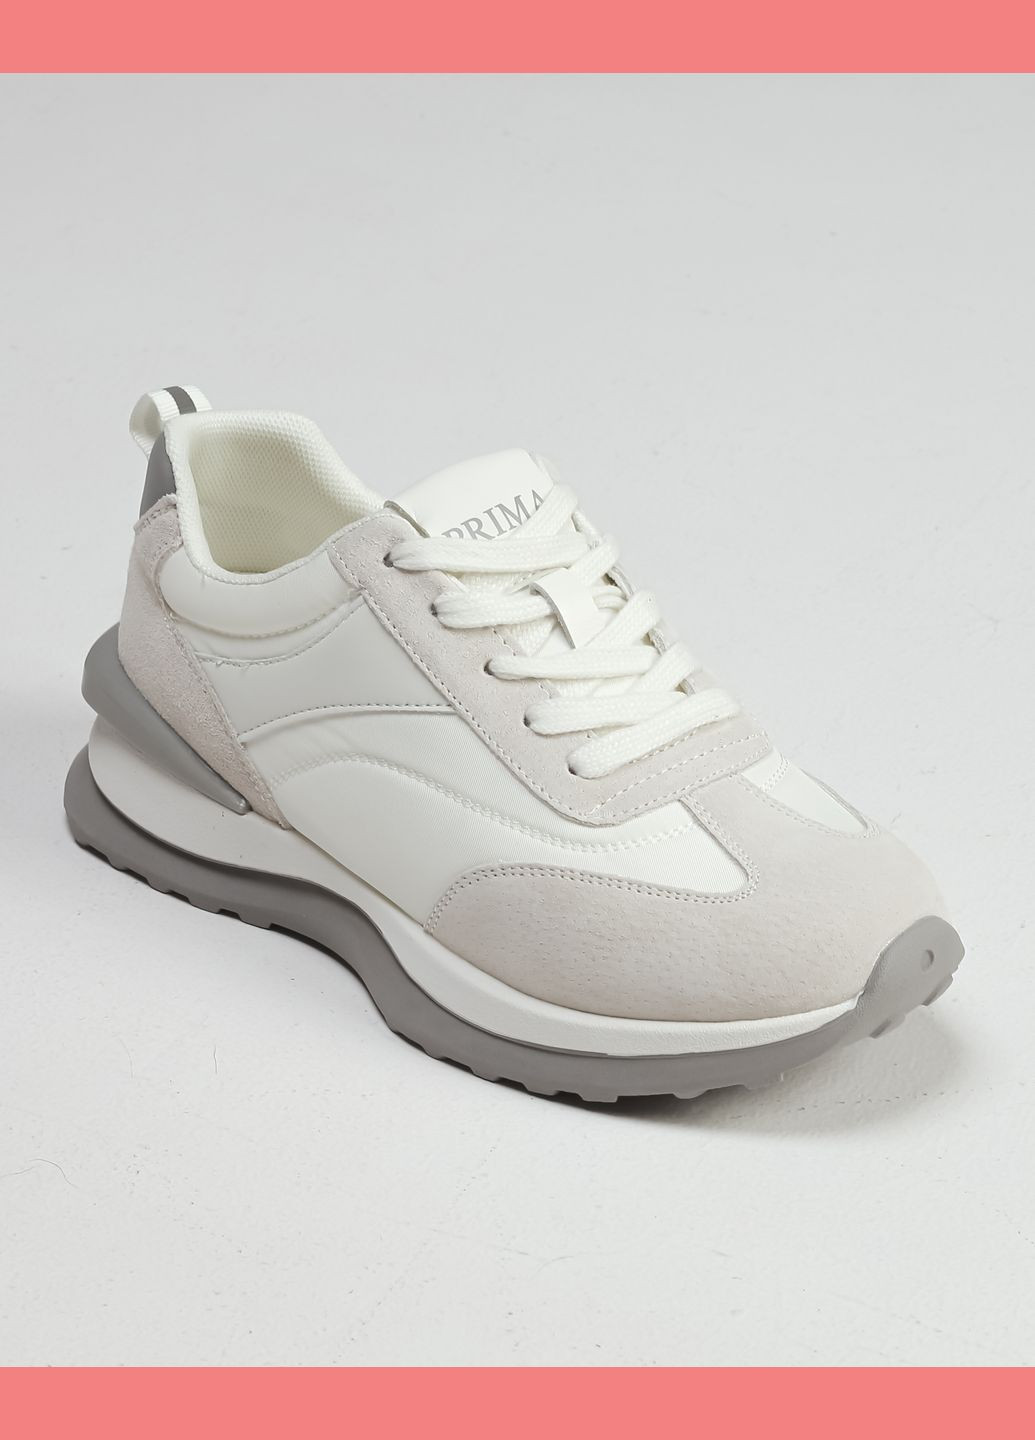 Білі всесезонні кросівки біло-сірі замша текстиль Prima d'Arte